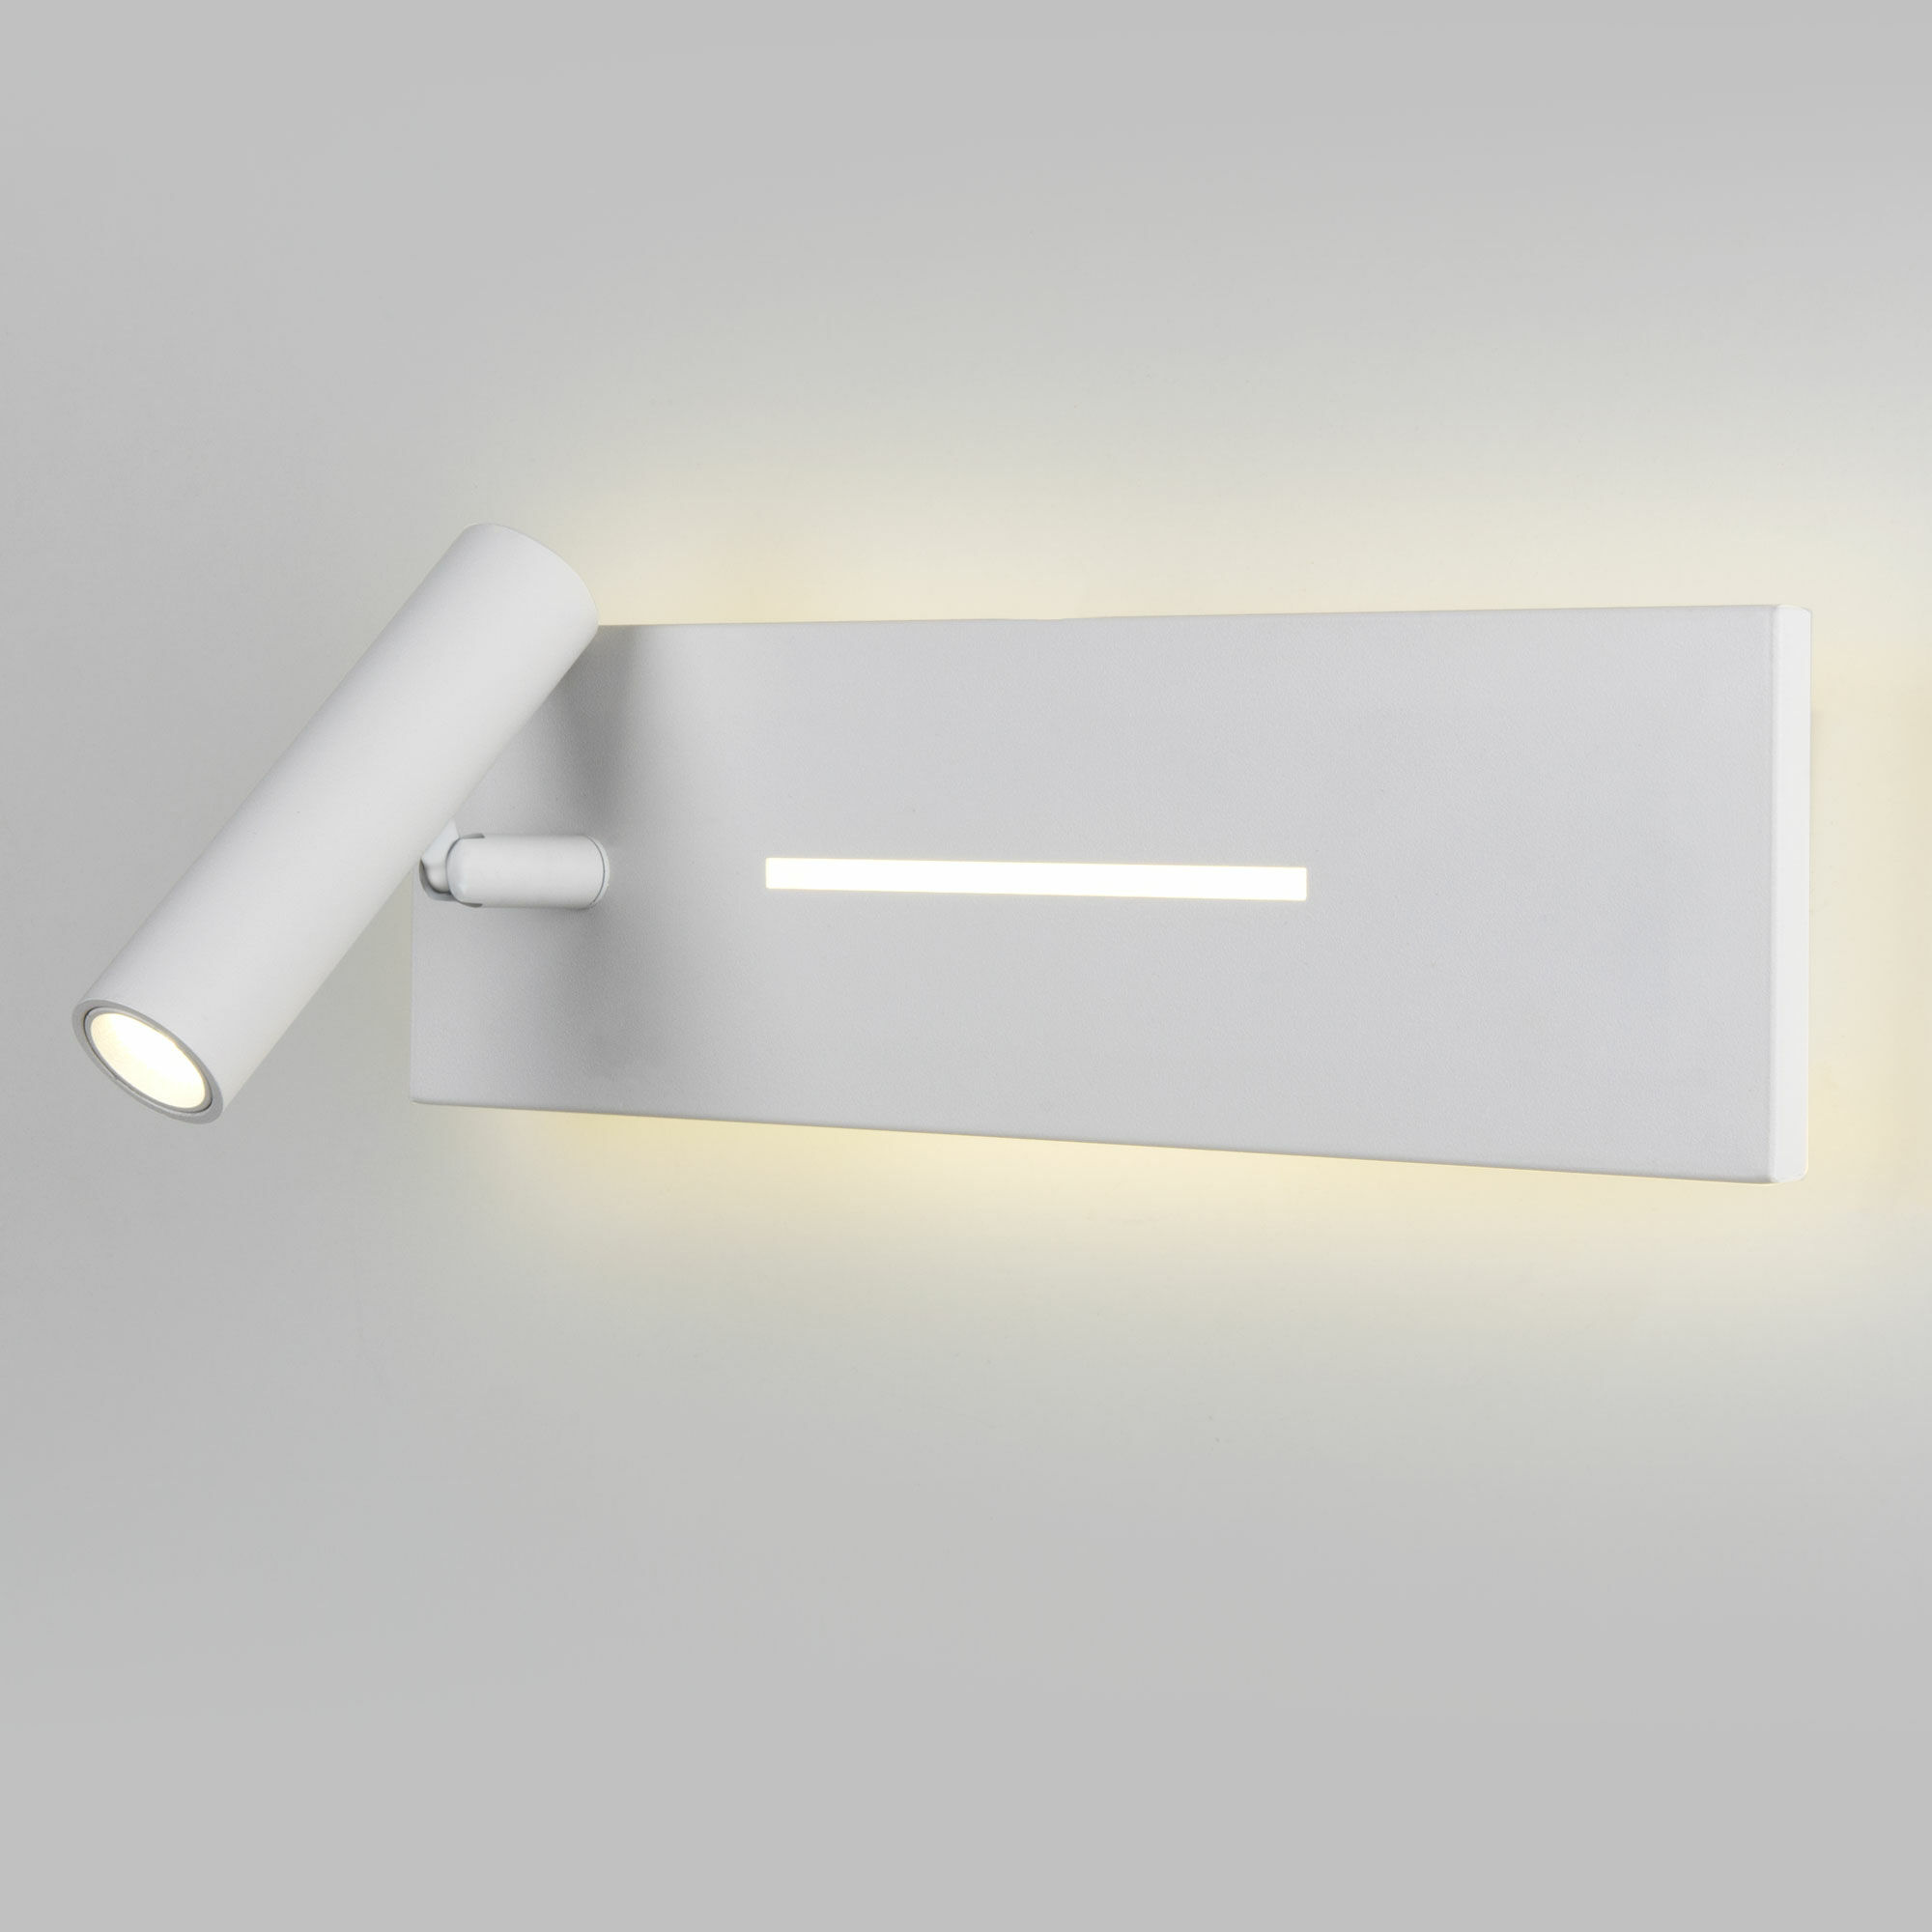 Светильник настенный светодиодный Tuo LED MRL LED 1117 белый Elektrostandard